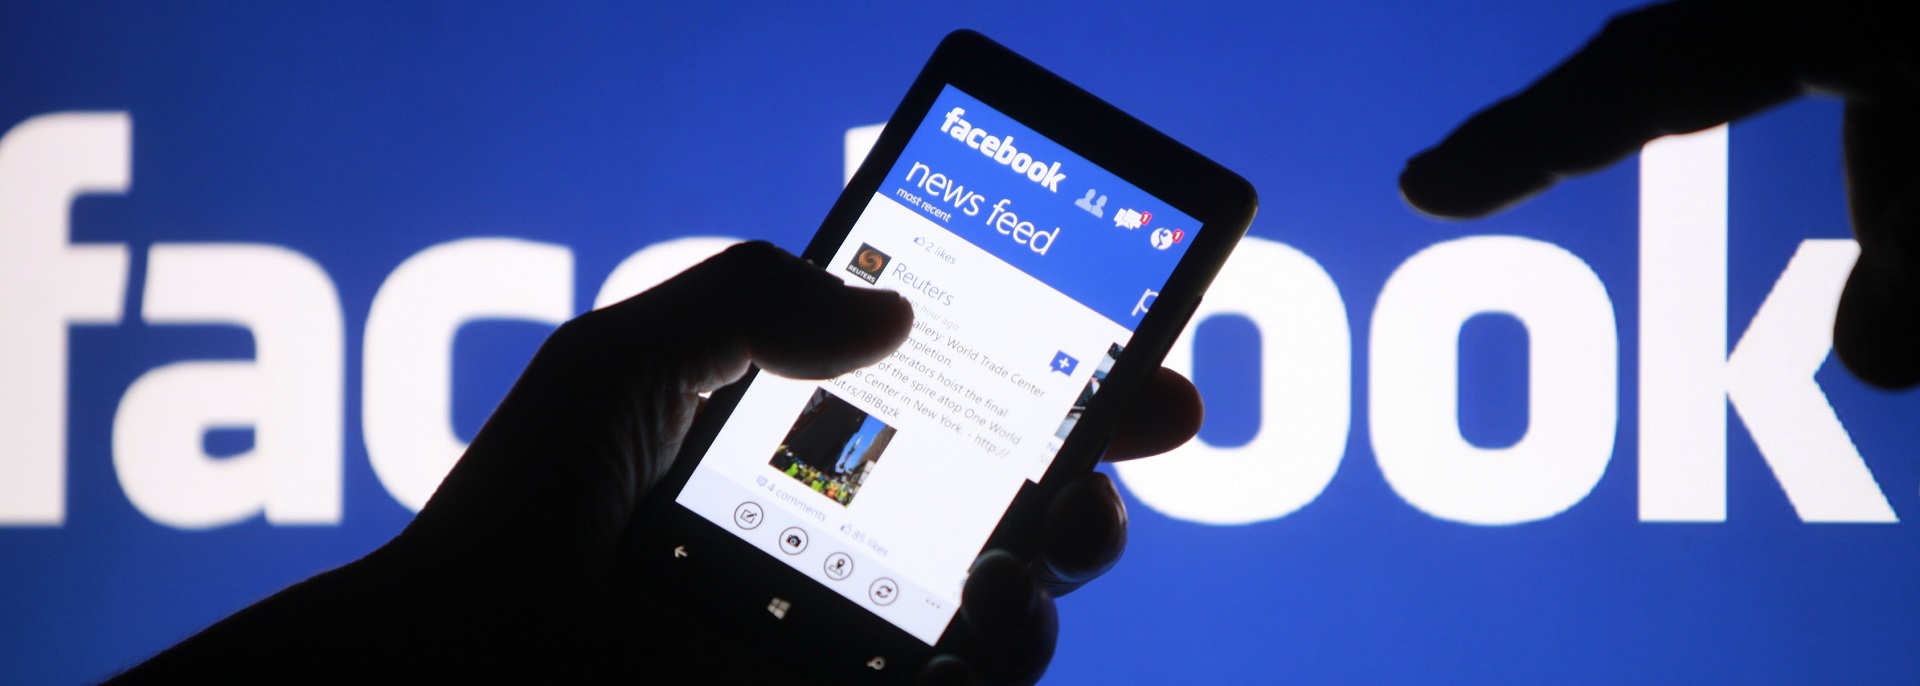 Tận dụng quảng cáo hiệu quả thông qua mạng xã hội facebook